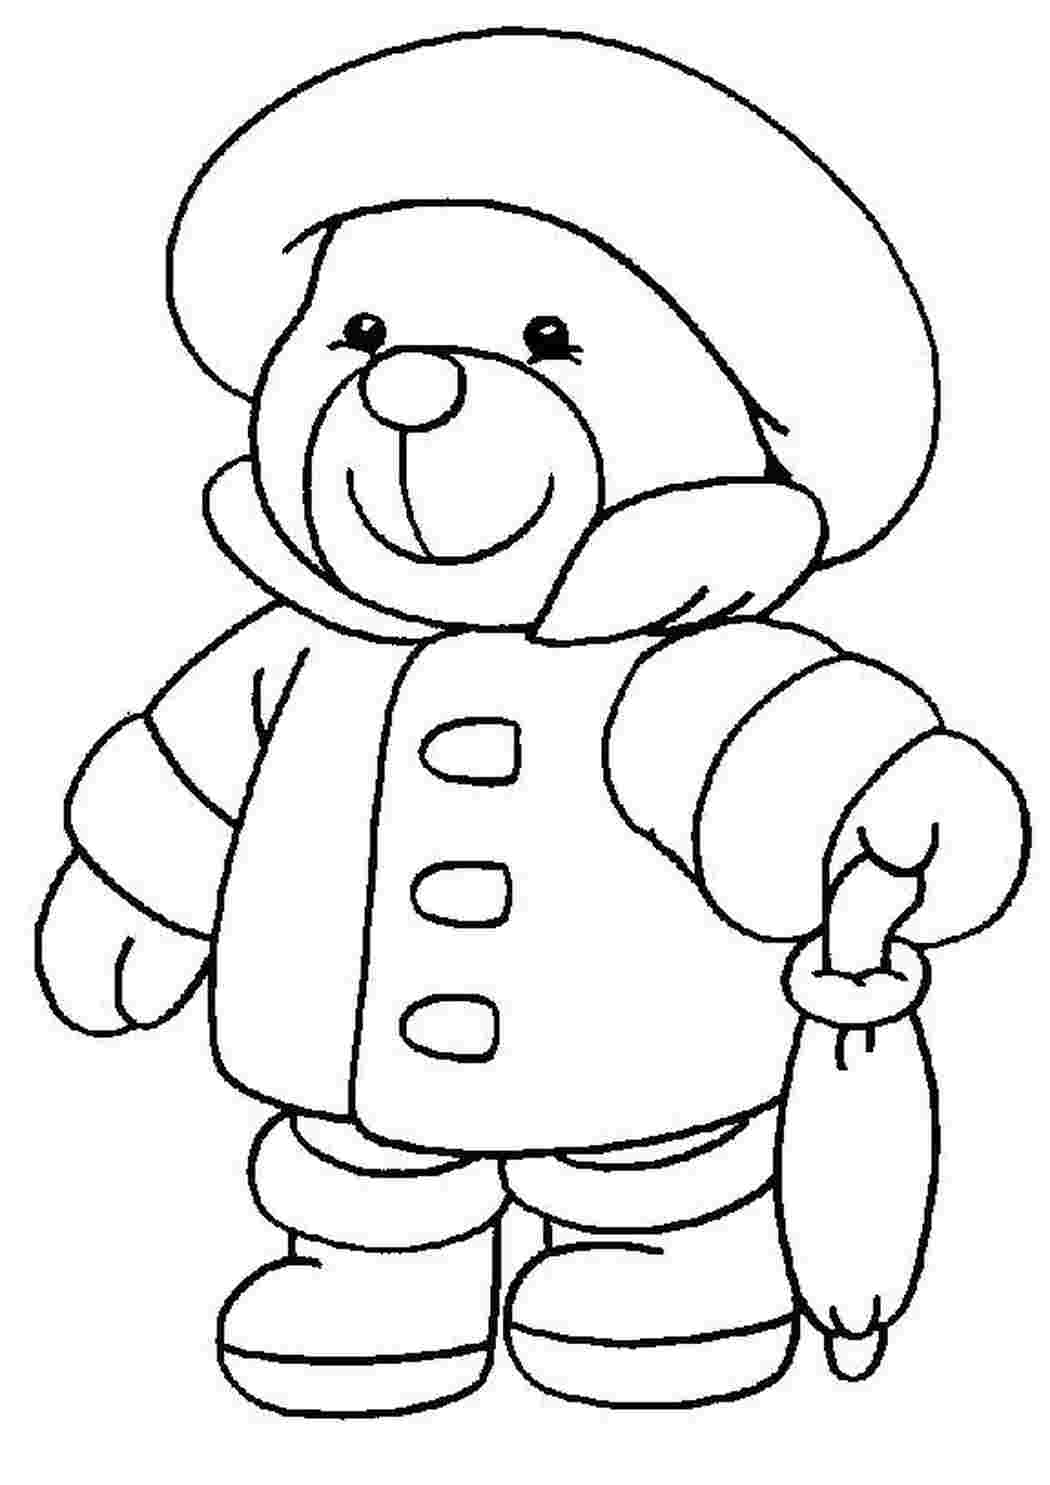 Медвежонок рисунок Изображения – скачать бесплатно на Freepik